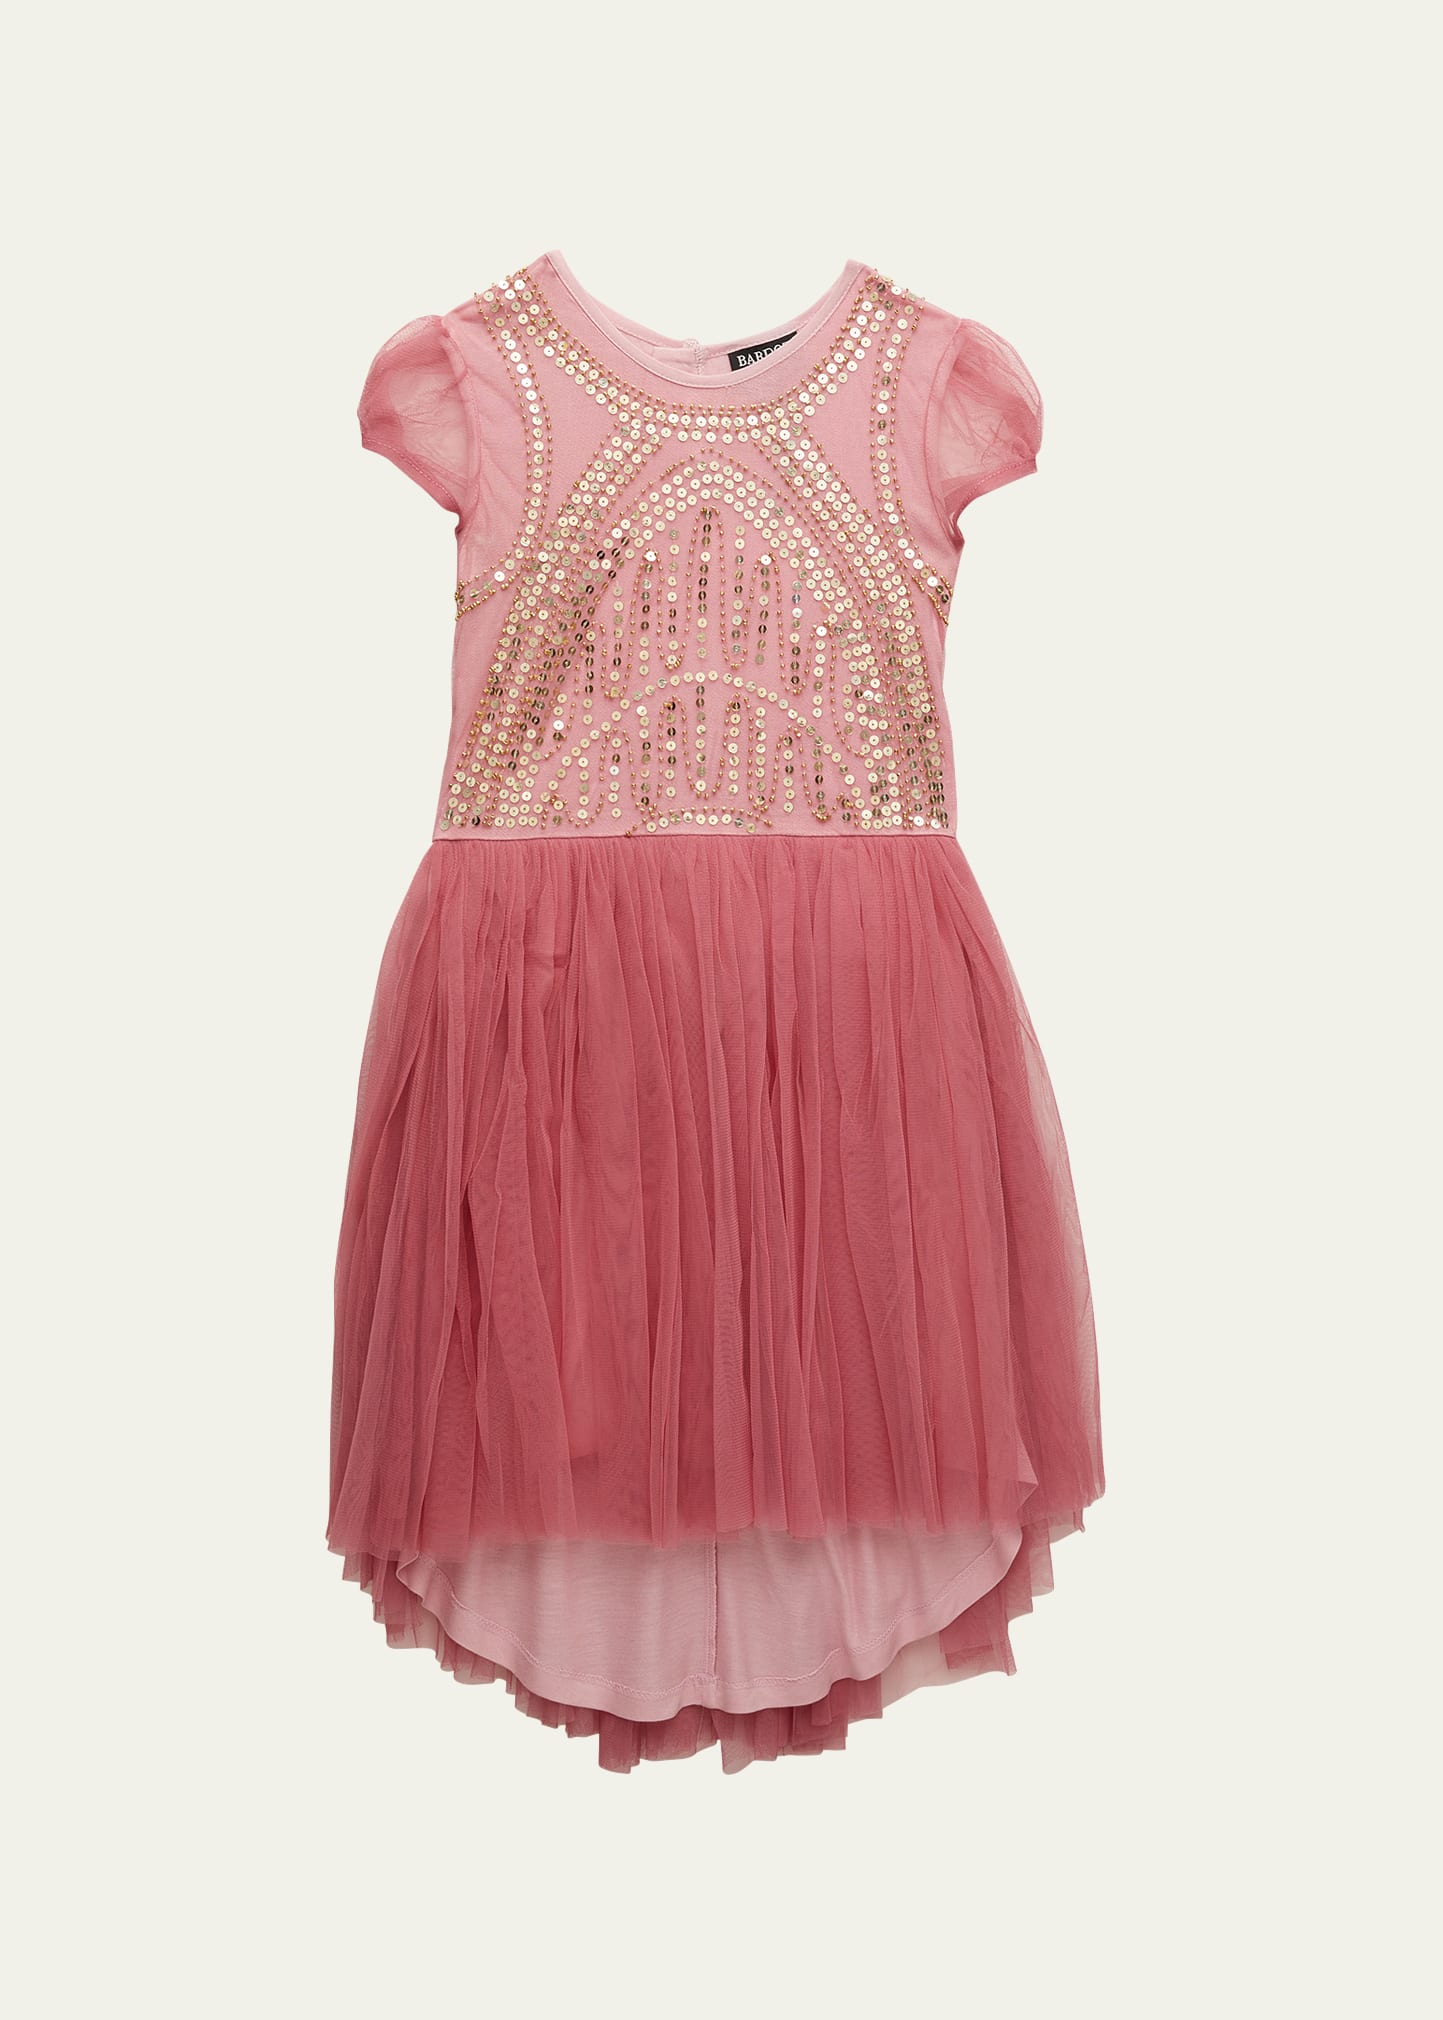 Bardot Kids' Girl's Taylor Embellished Tulle Open Back Dress In Pink Pink